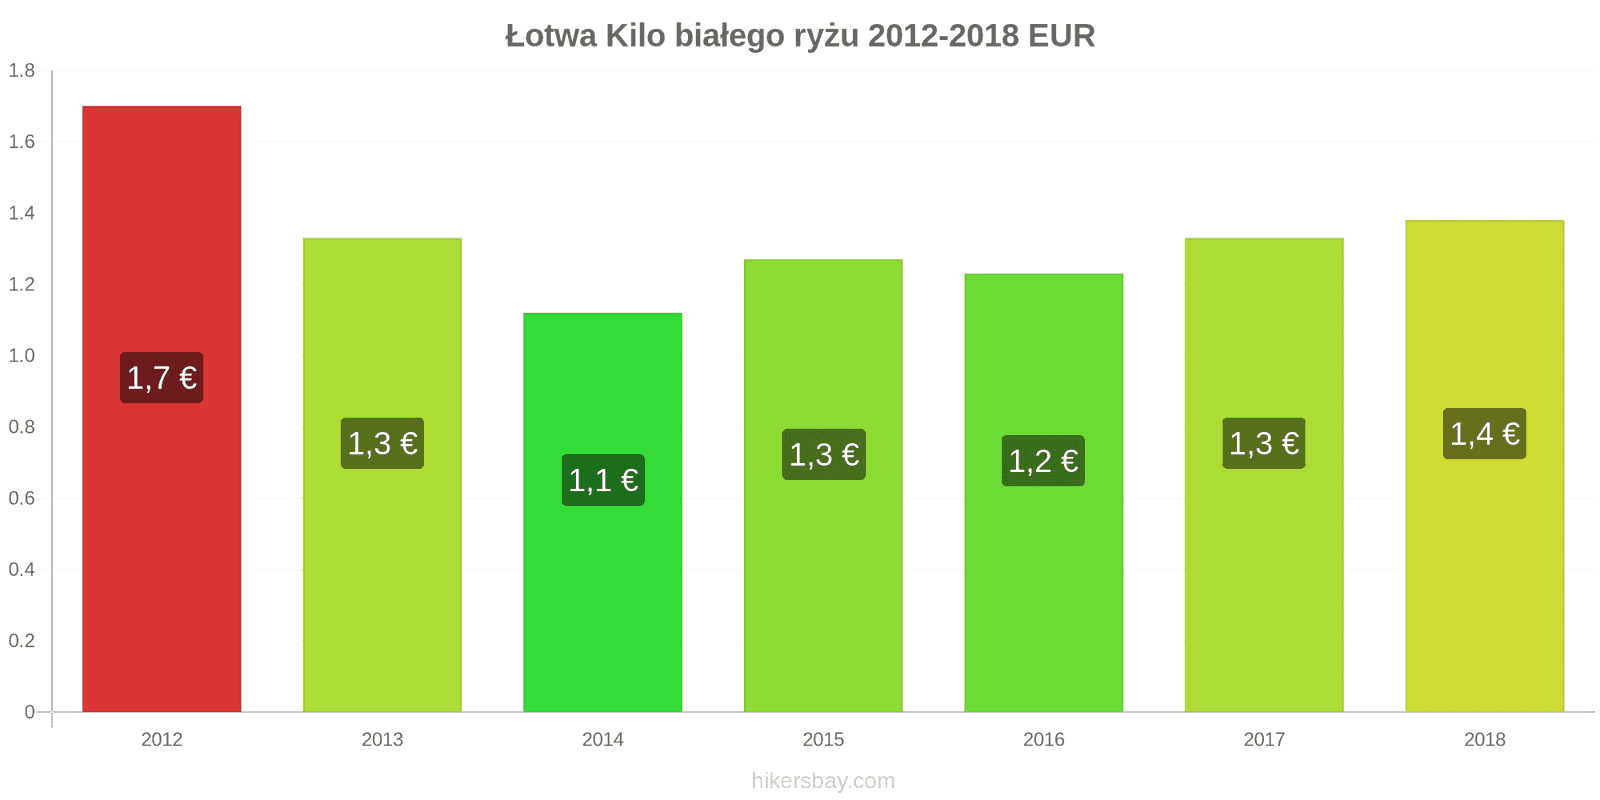 Łotwa zmiany cen Kilo białego ryżu hikersbay.com